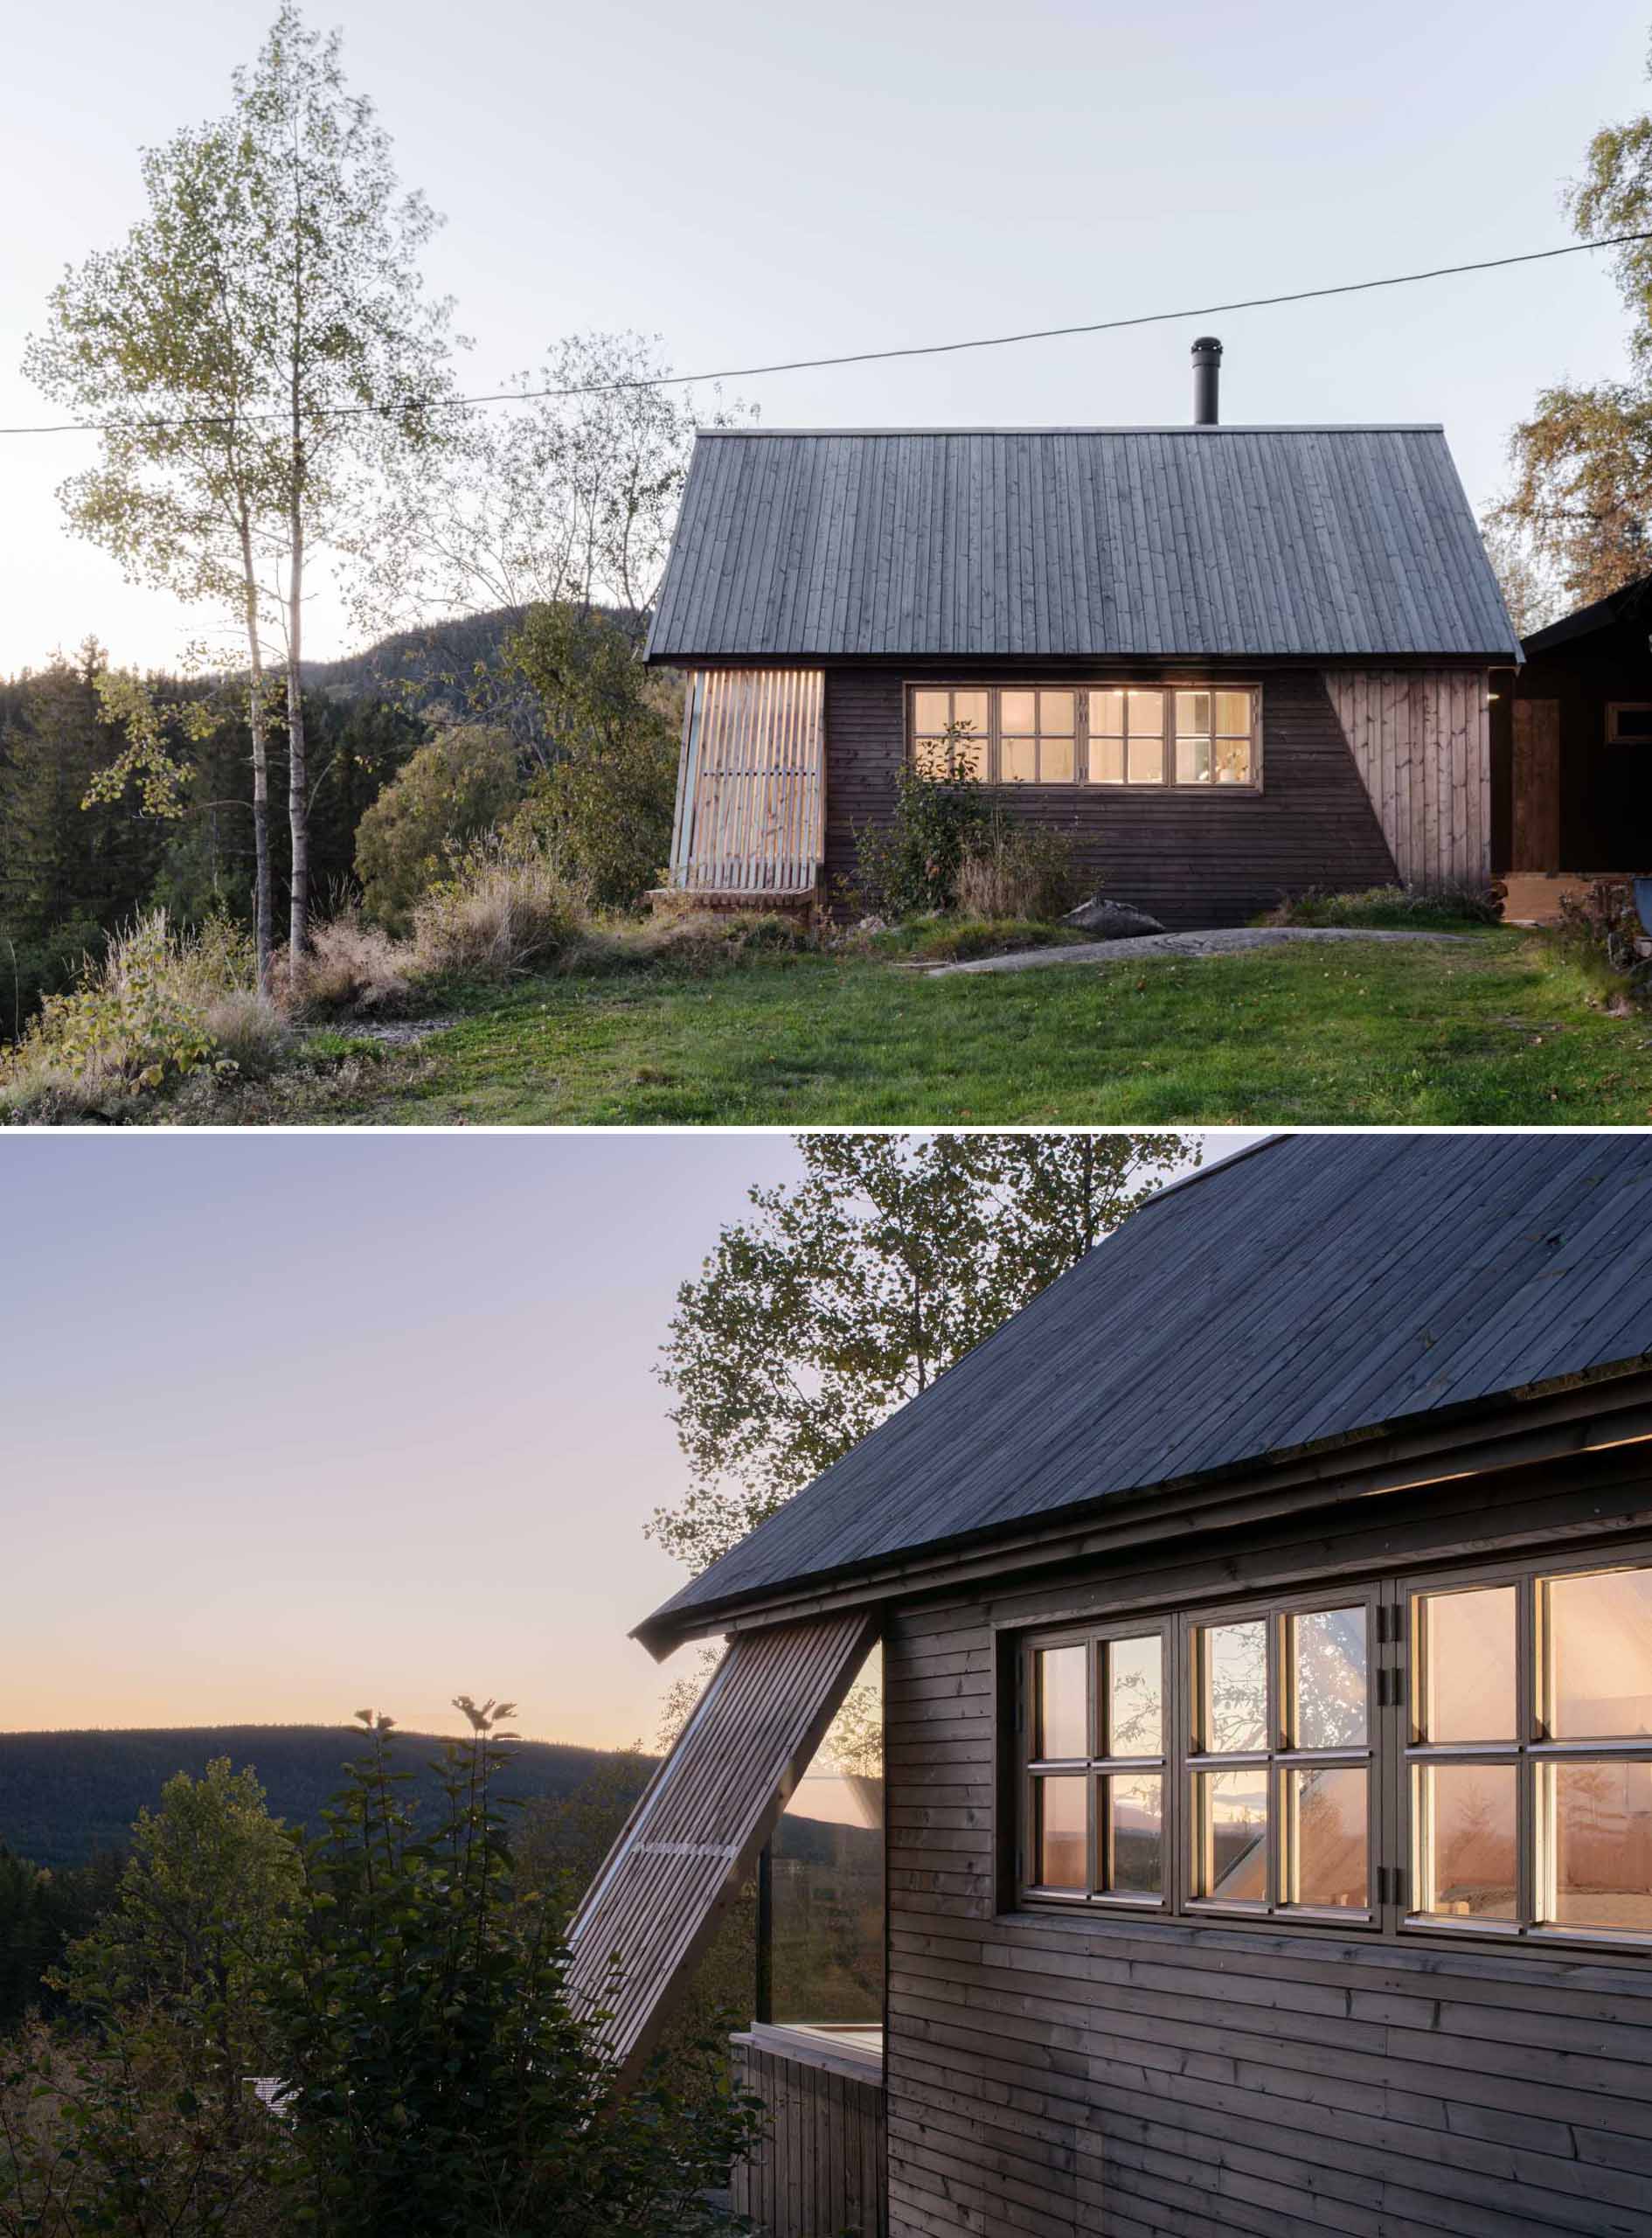 O cabină contemporană concepută pentru a include o fereastră cu formă unică, care încadrează perfect apusul.